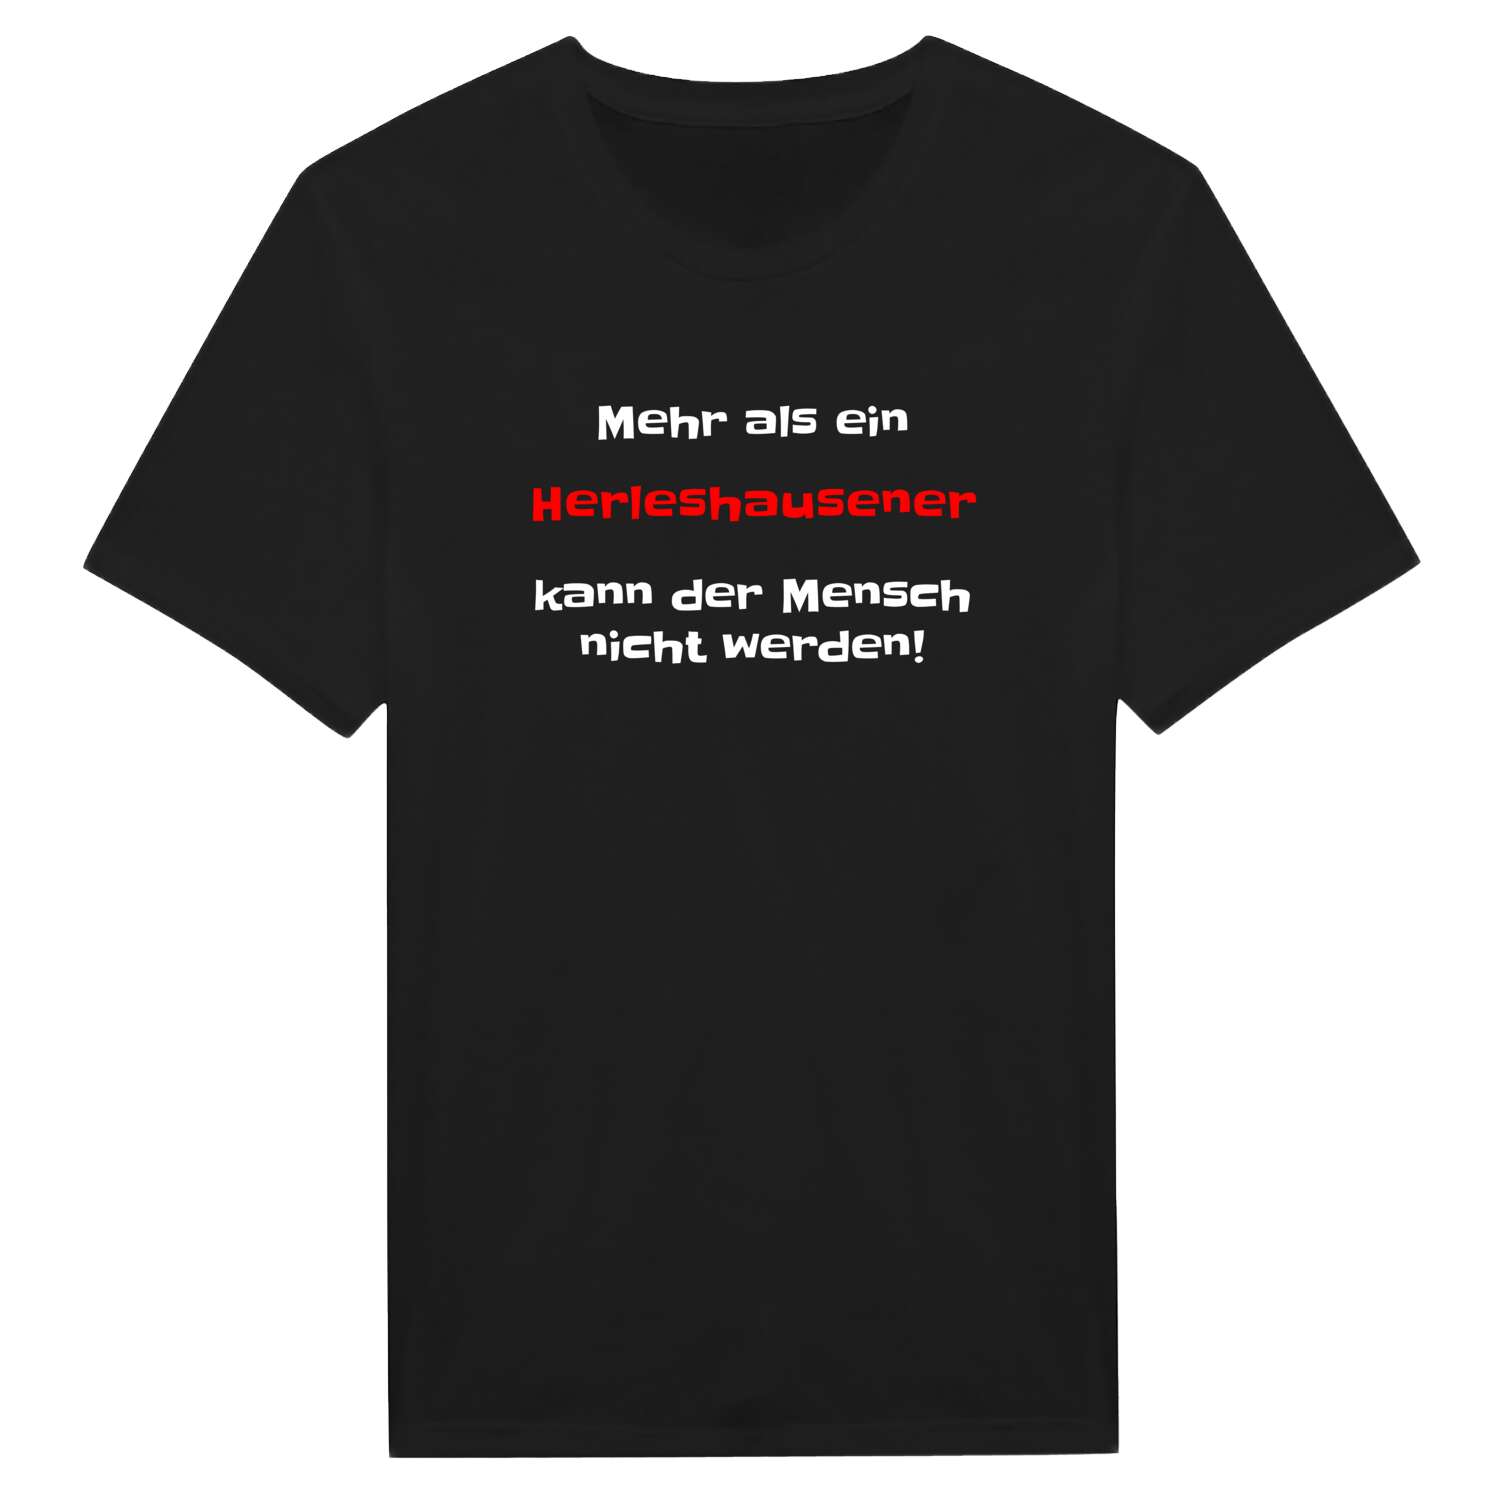 Herleshausen T-Shirt »Mehr als ein«